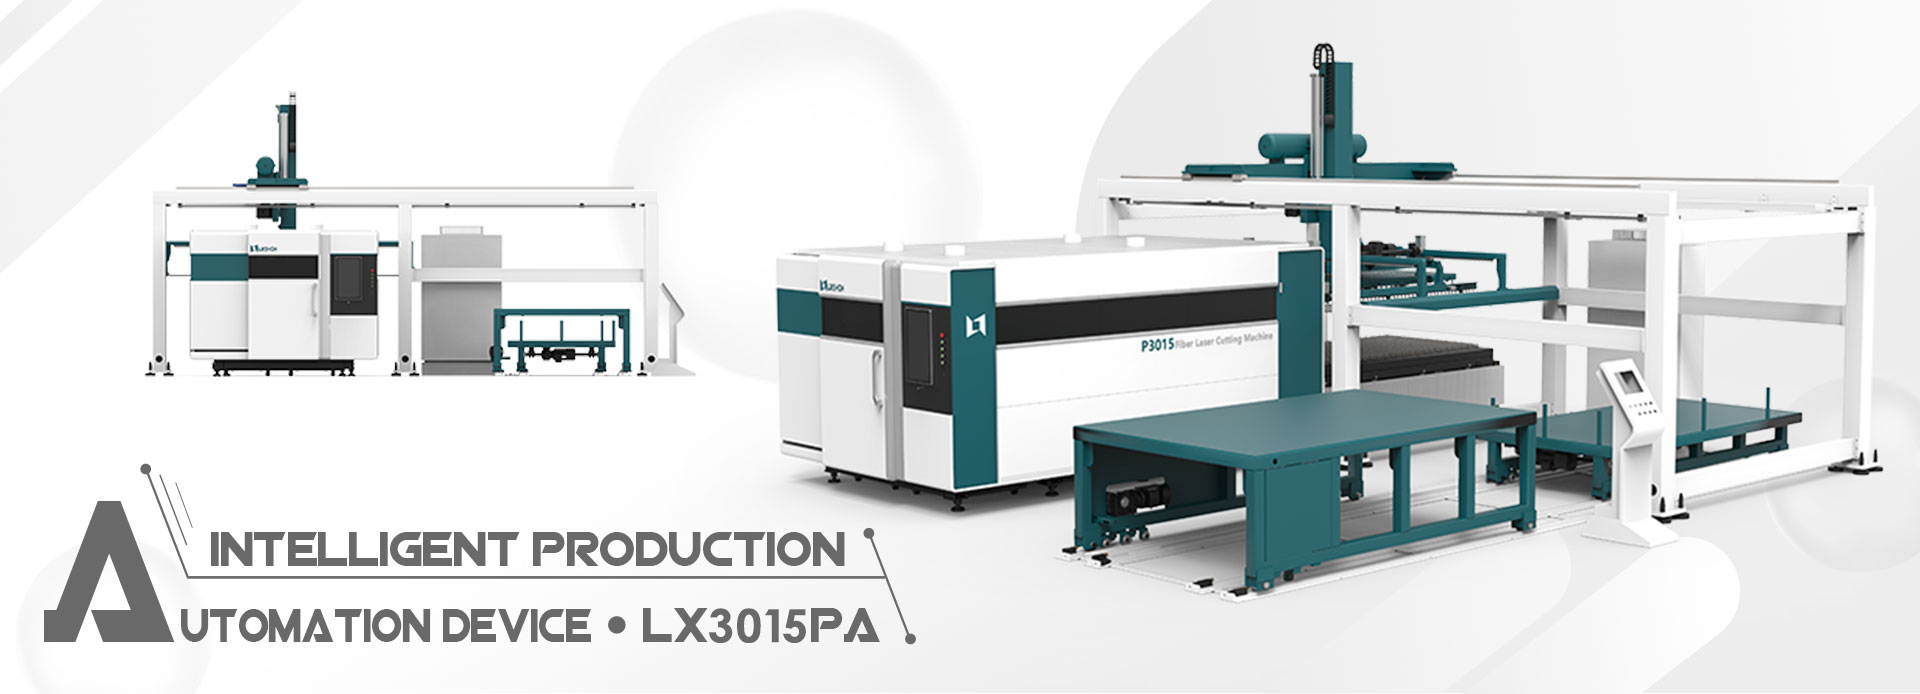 LX3015PA Automatisearring apparaat fiber laser cutter priis te keap metaal laser masine snije koalstof dikte chart aluminium plaat foar yndustry